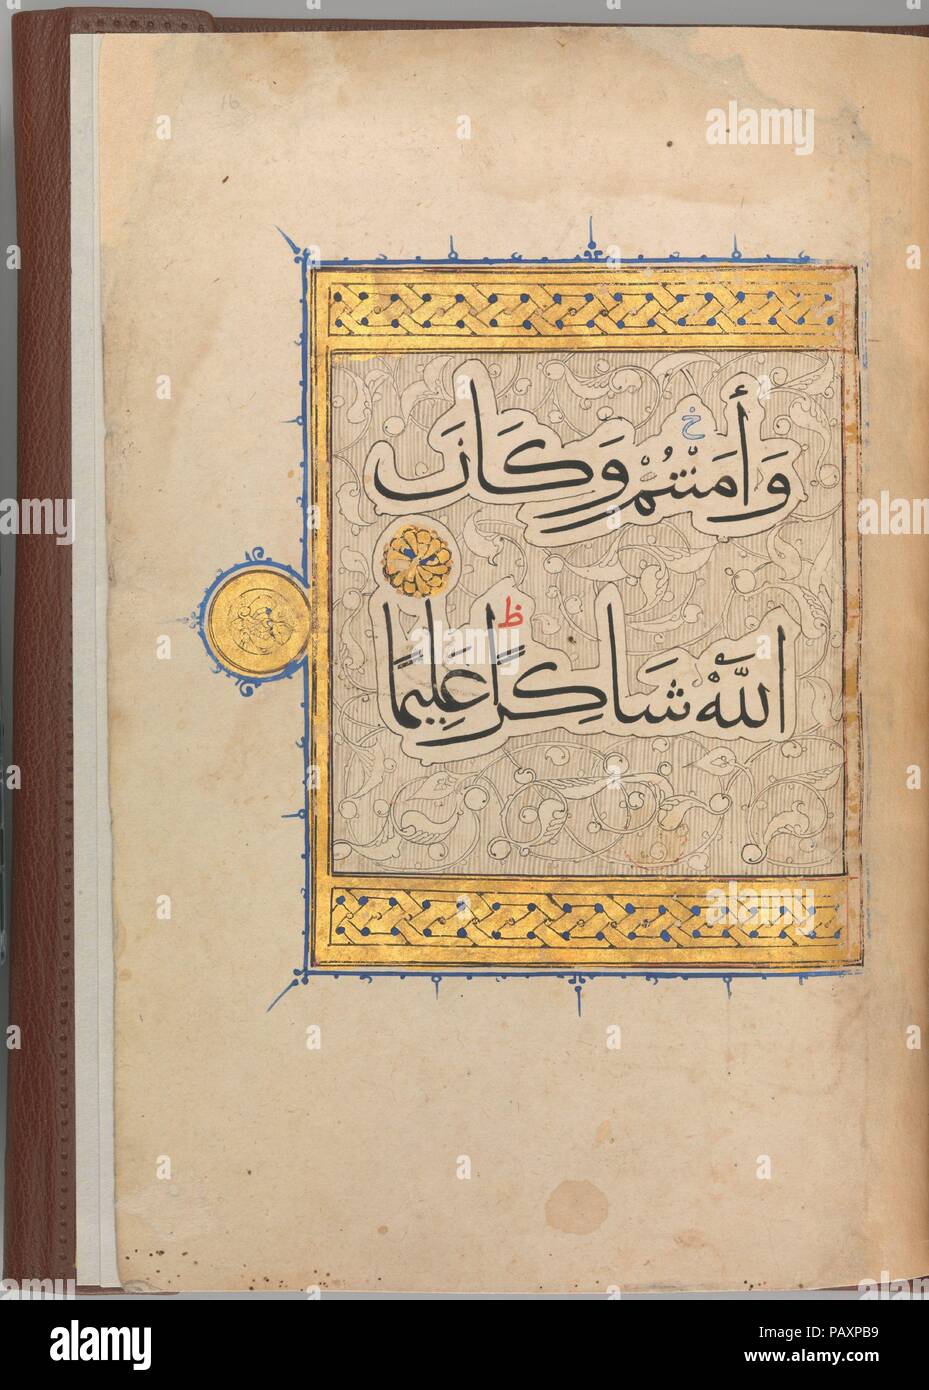 Abschnitt von einem Koran Manuskript. Abmessungen: 10 7/16 x 7 1/2 in. (26,5 x 19 cm). Datum: Ca. 1320. Dieser Abschnitt des Koran Handschrift auf Pergament geschrieben enthält Verse 114-147 aus Sure 4 (al-Nisa', 'Frauen'). Auf der letzten Seite wird der Text durch ein vergoldeter Rand umrahmt und ist in der Wolke-Bands vor dem Hintergrund der Schriftrollen. Der Stil des Skript ist cursive muhaqqaq, der im 13. Jahrhundert heilig gesprochen, das ist von größeren Dimensionen als naskhi und vor allem bei großen Qur'ans beschäftigt. Die braunen Ledereinband, gold-in Mamluk Stil nachgerüstet, ist ein Neuzugang. Museum: Metropolitan Museu Stockfoto